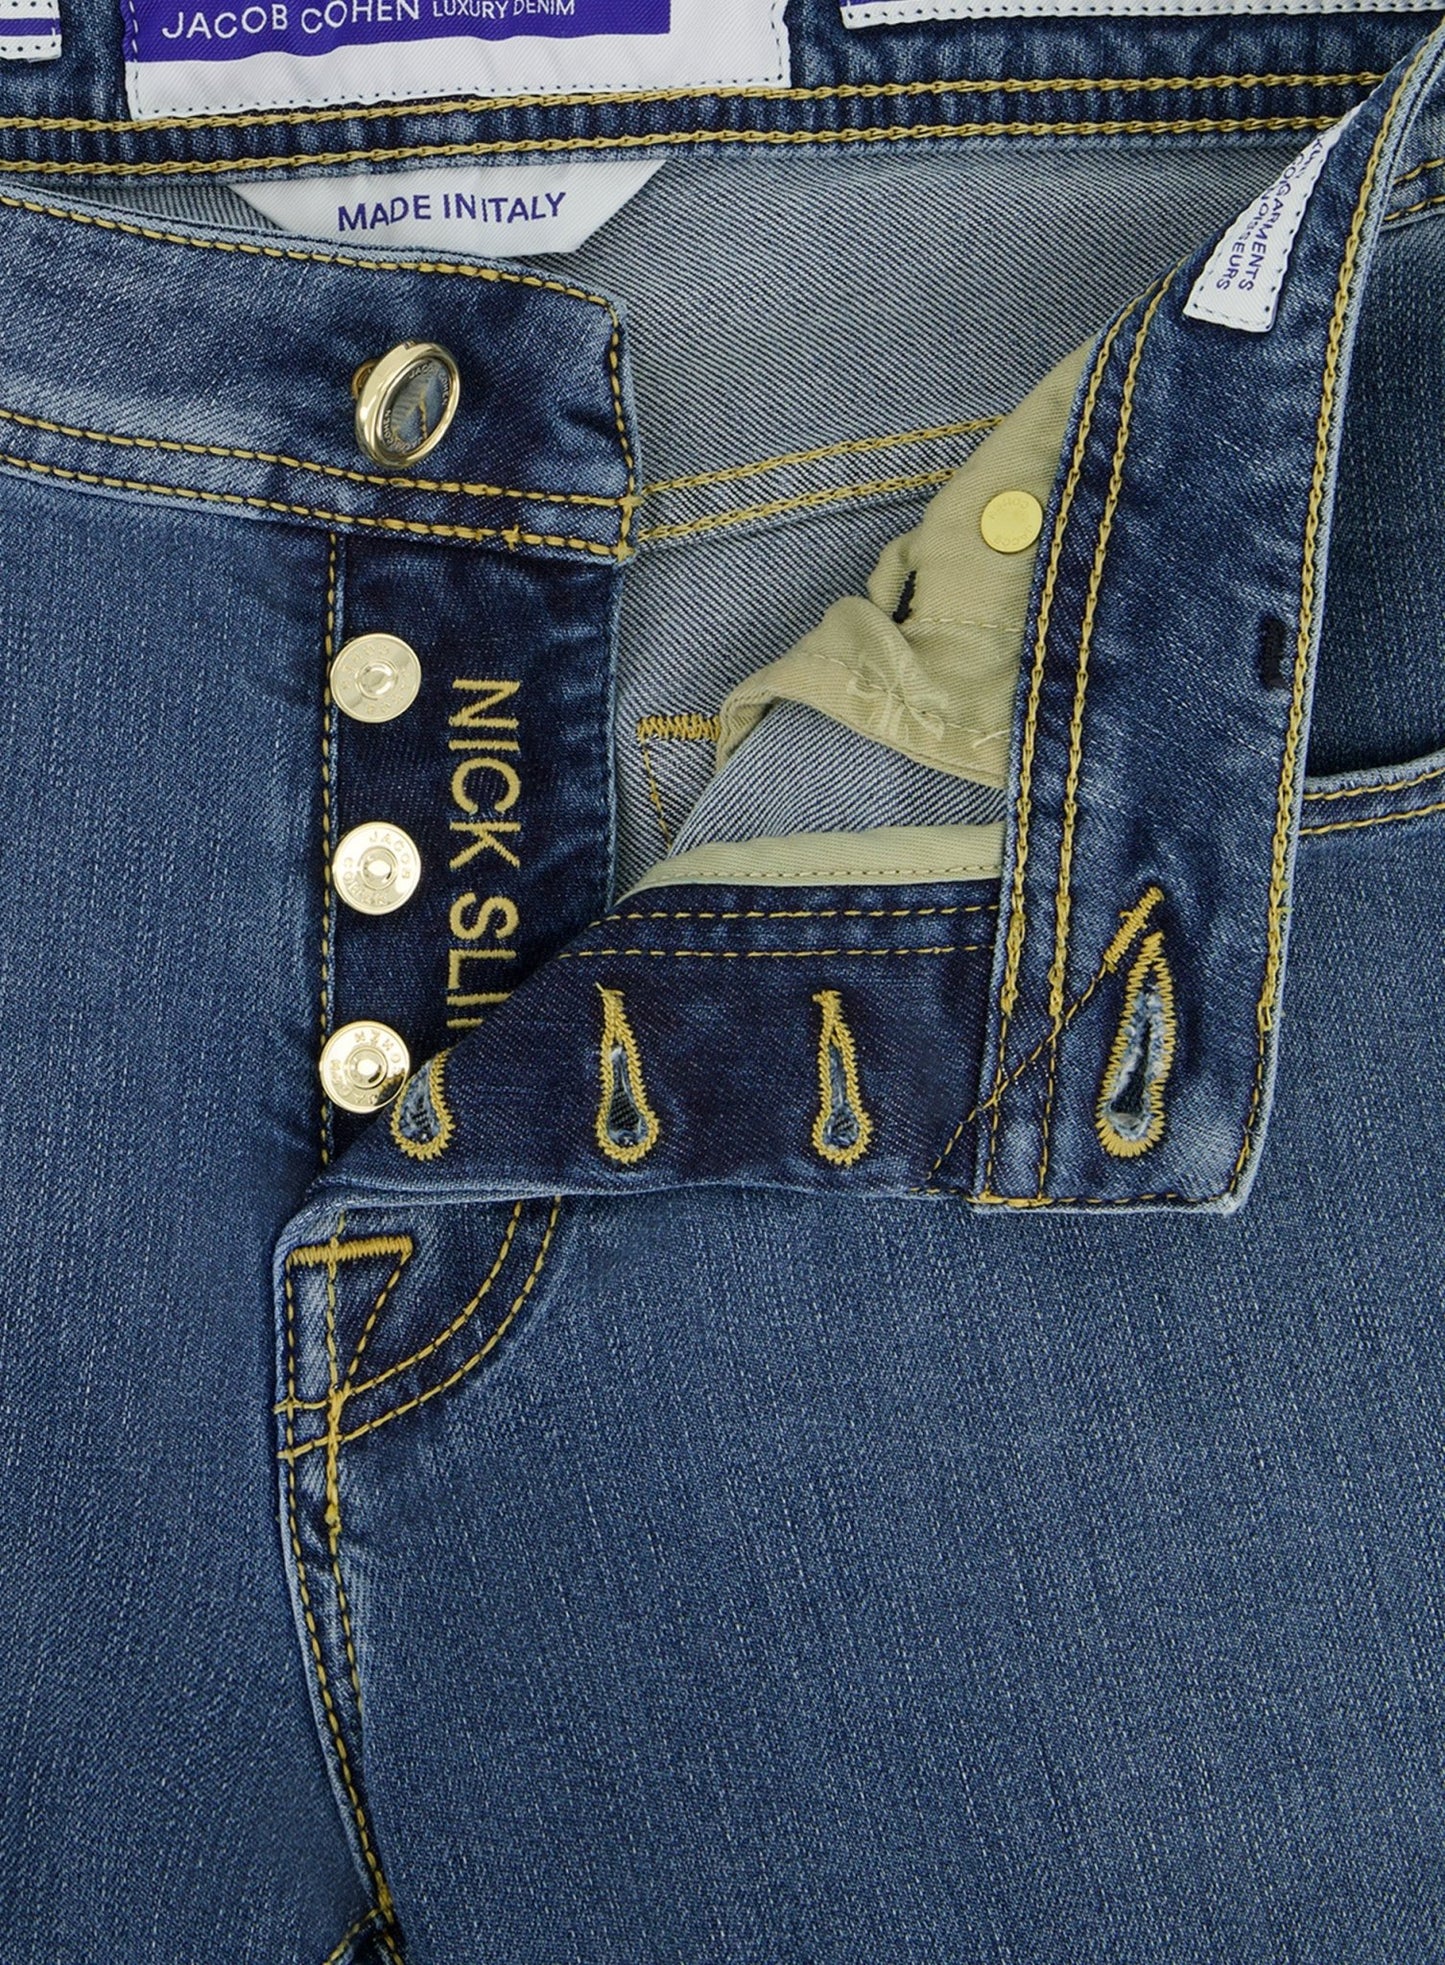 Nick slim-fit jeans | L.Blauw